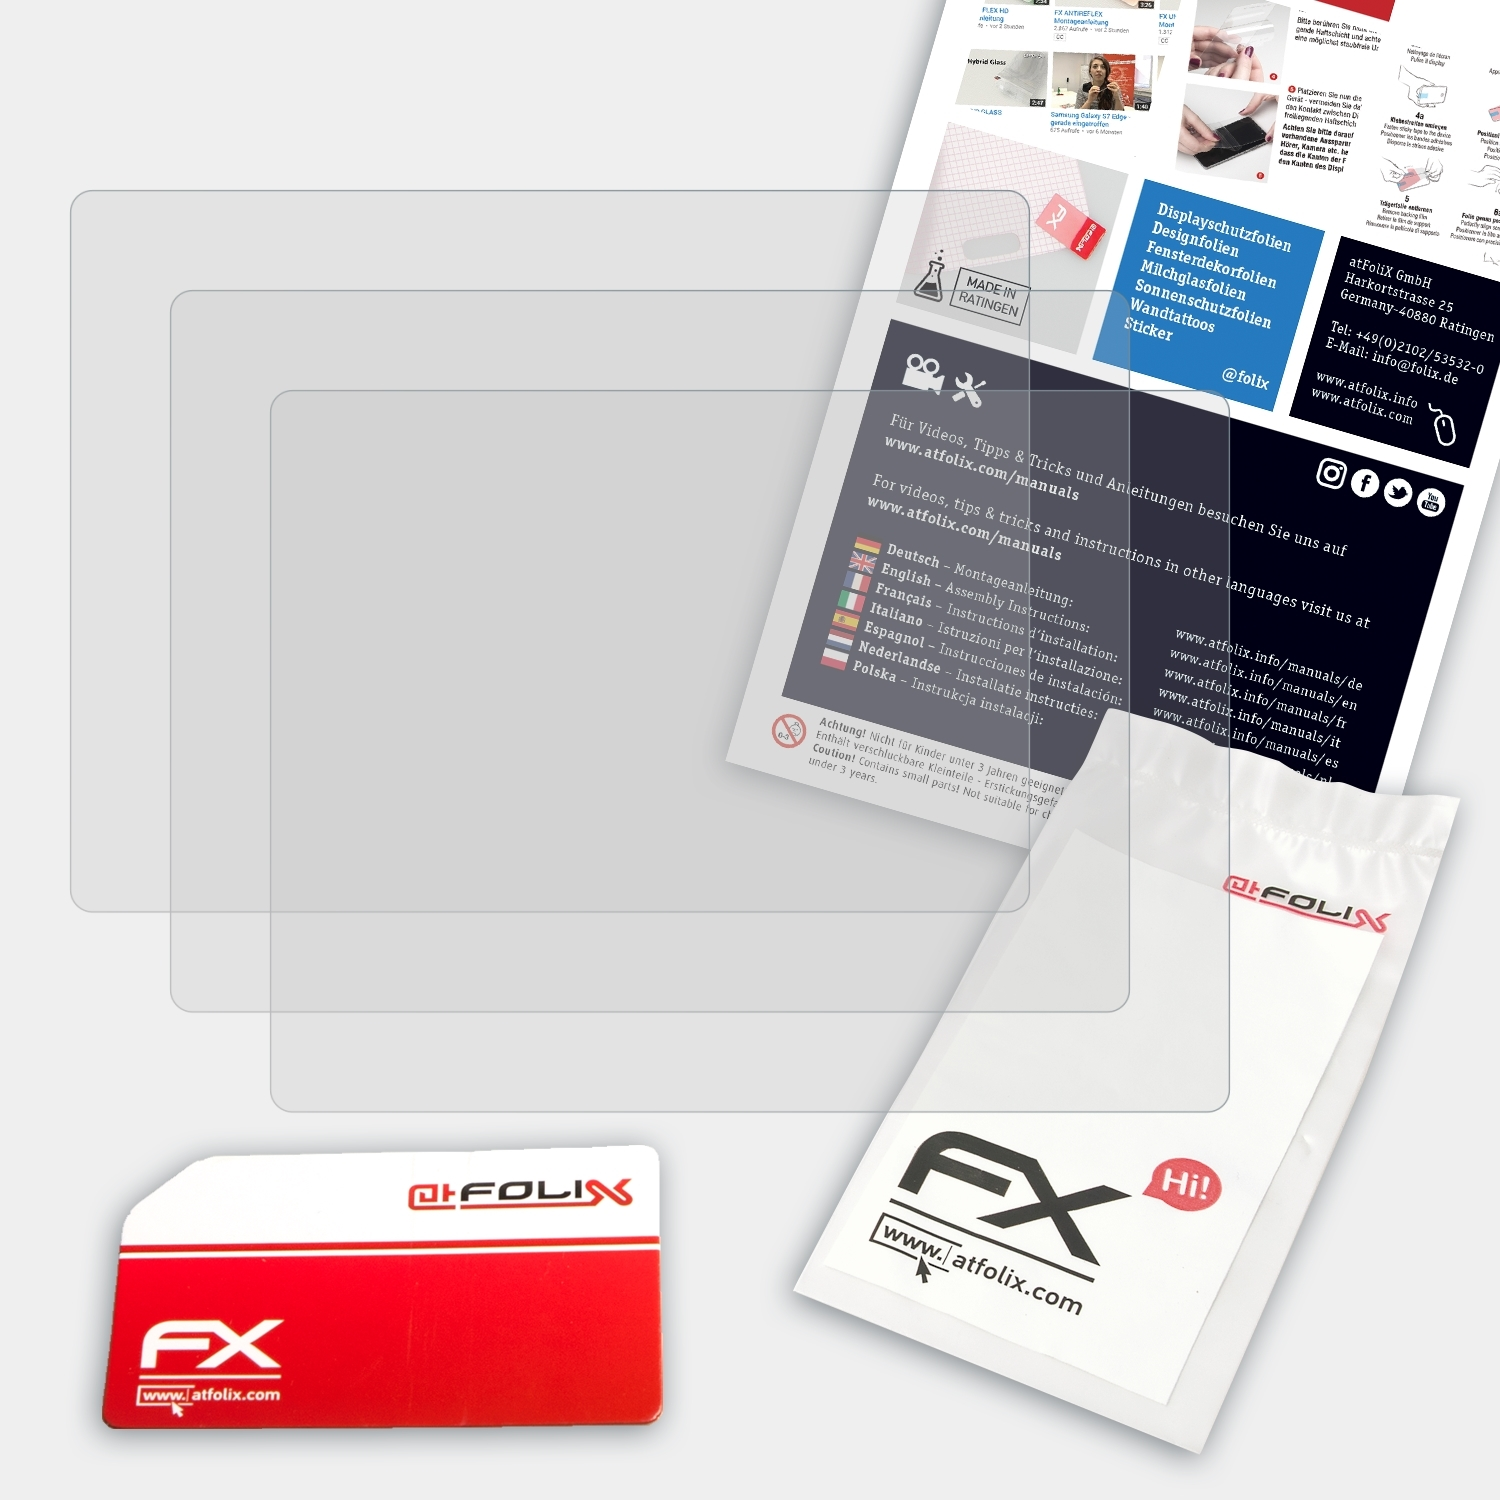 Displayschutz(für Praktica 3x Luxmedia FX-Antireflex Z212) ATFOLIX